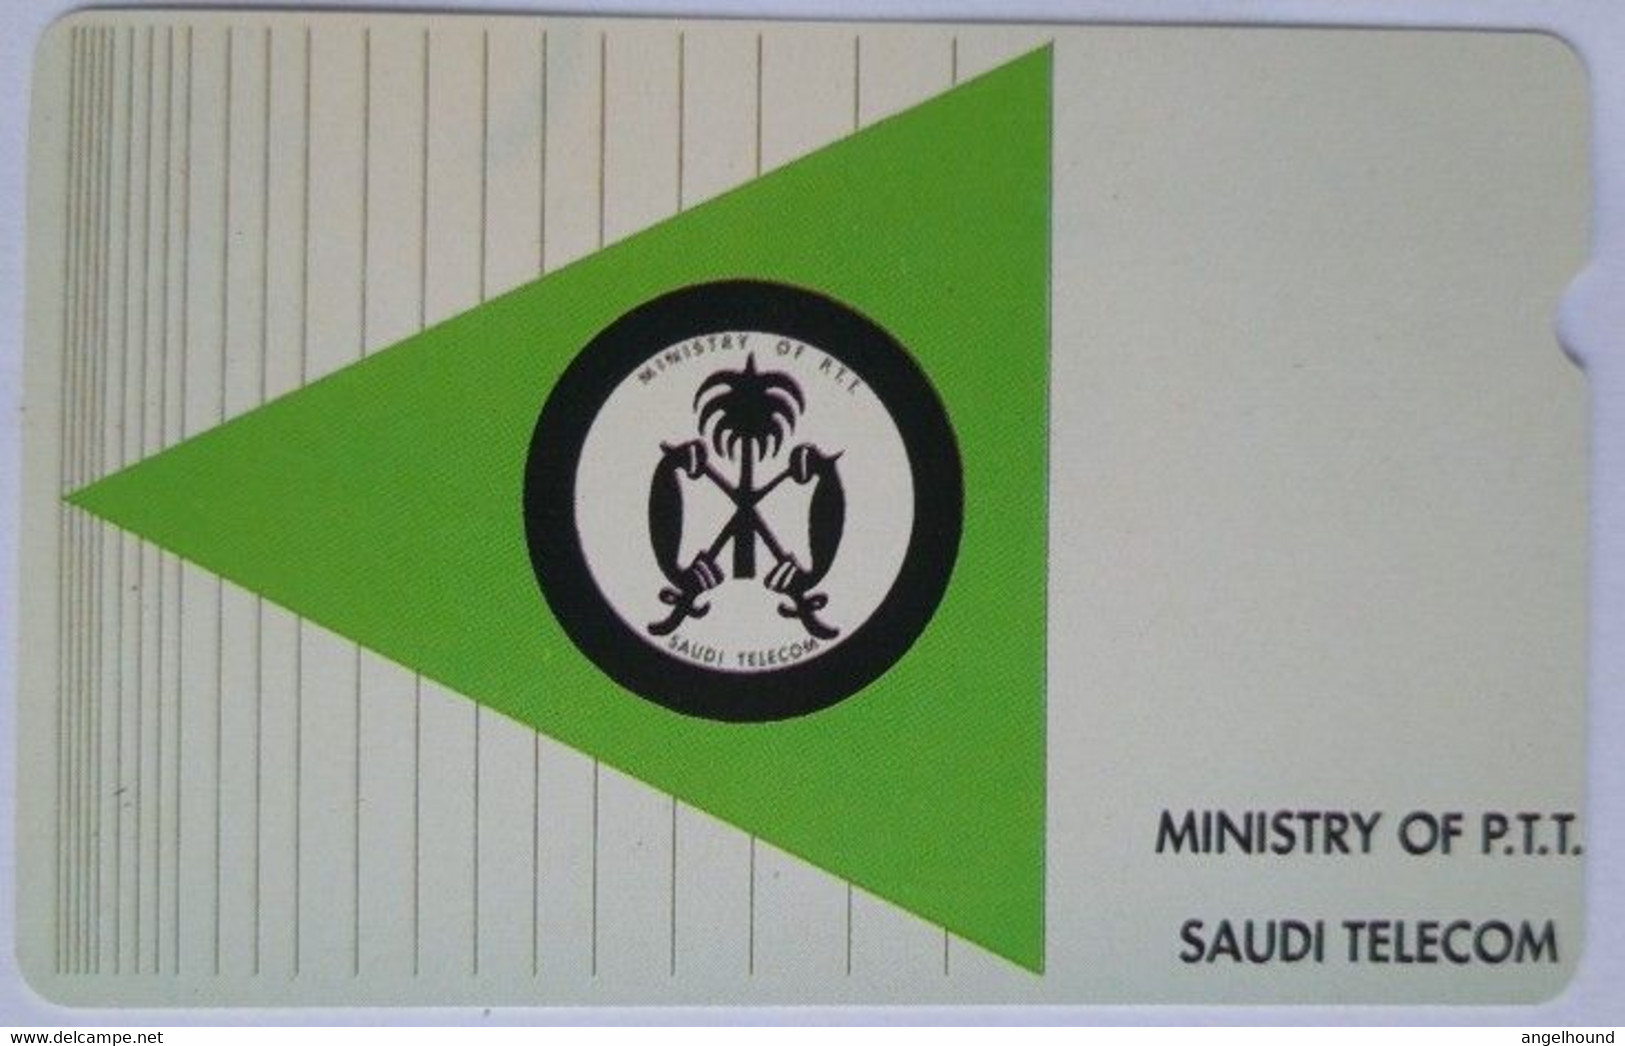 Saudi Telecom Ministry Of P.T.T. "A" A Value Logo In Green Triangle " - Arabie Saoudite